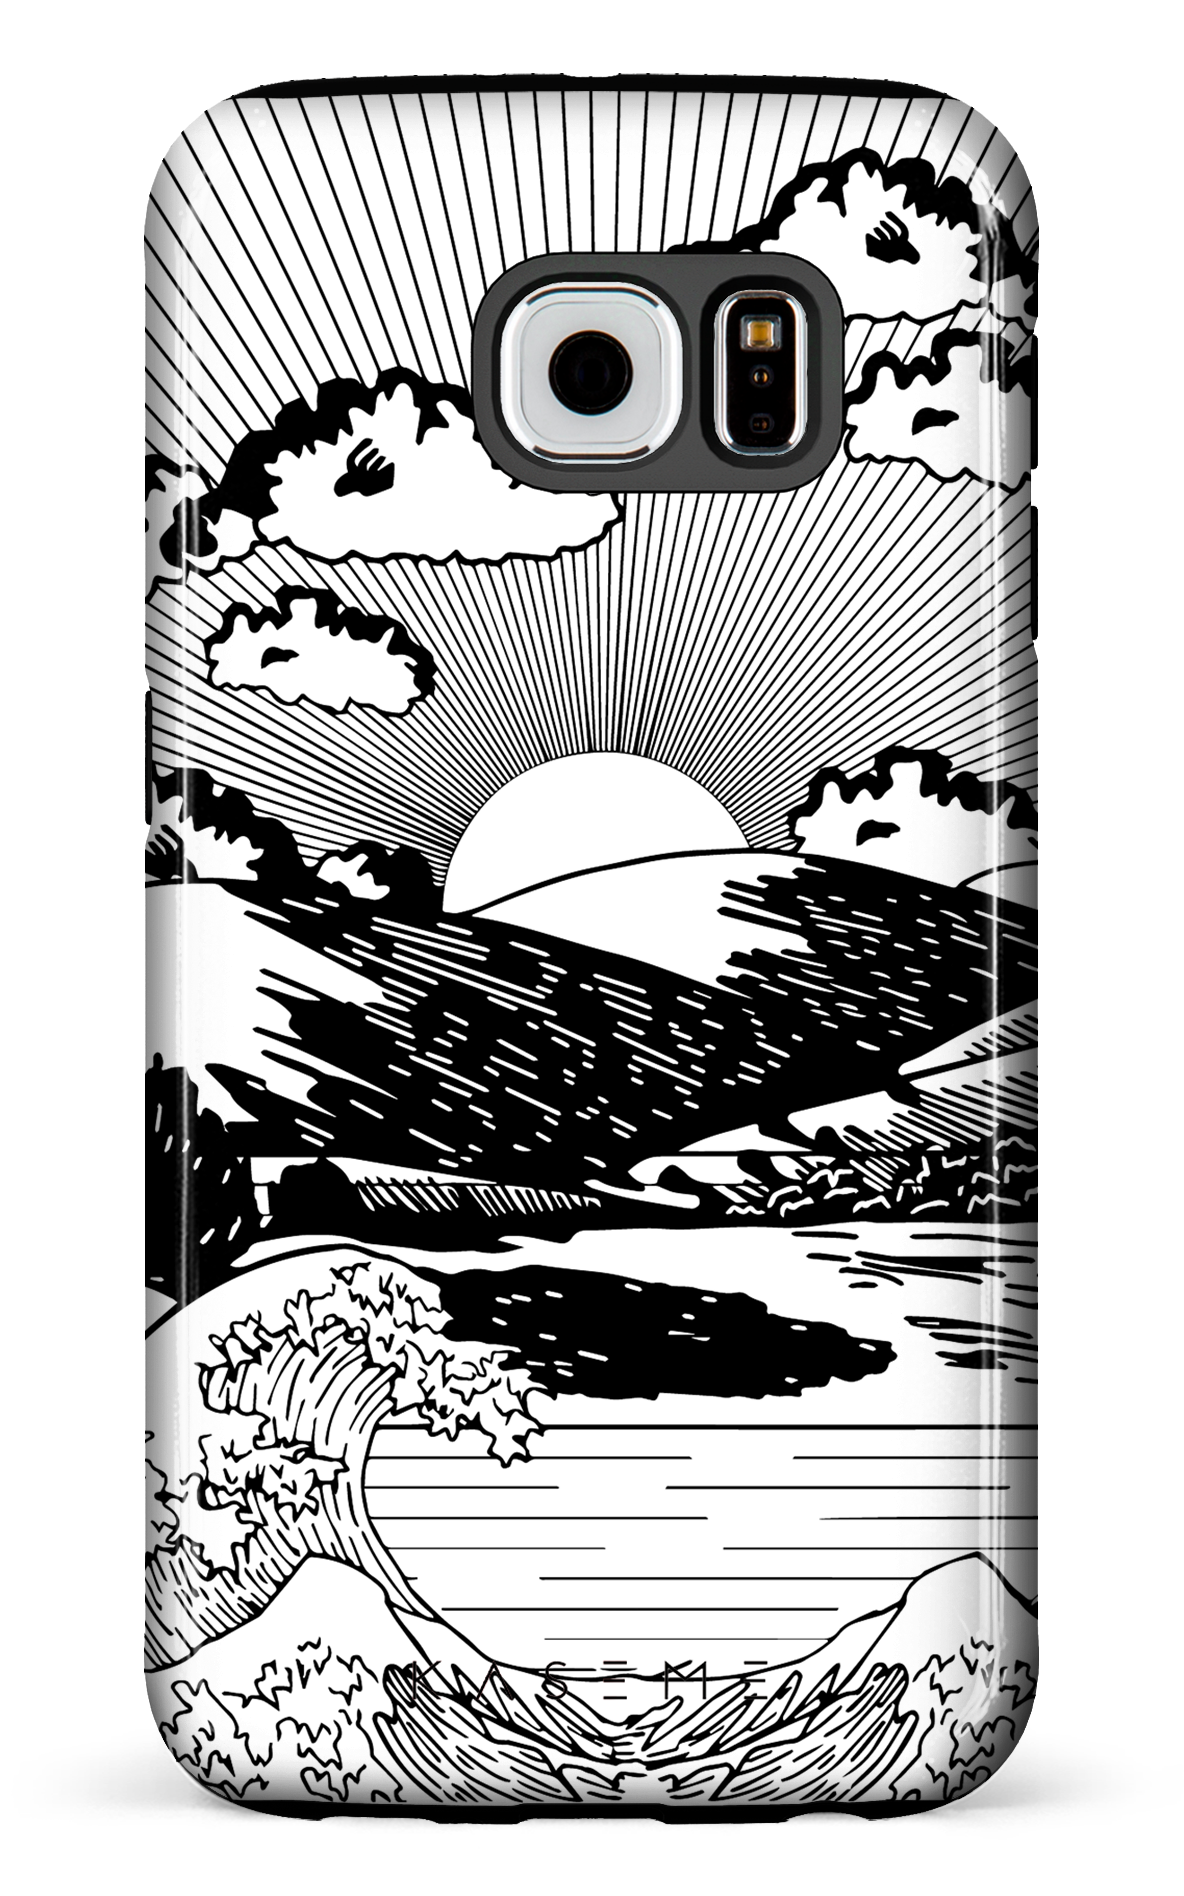 Sunbath - Galaxy S6